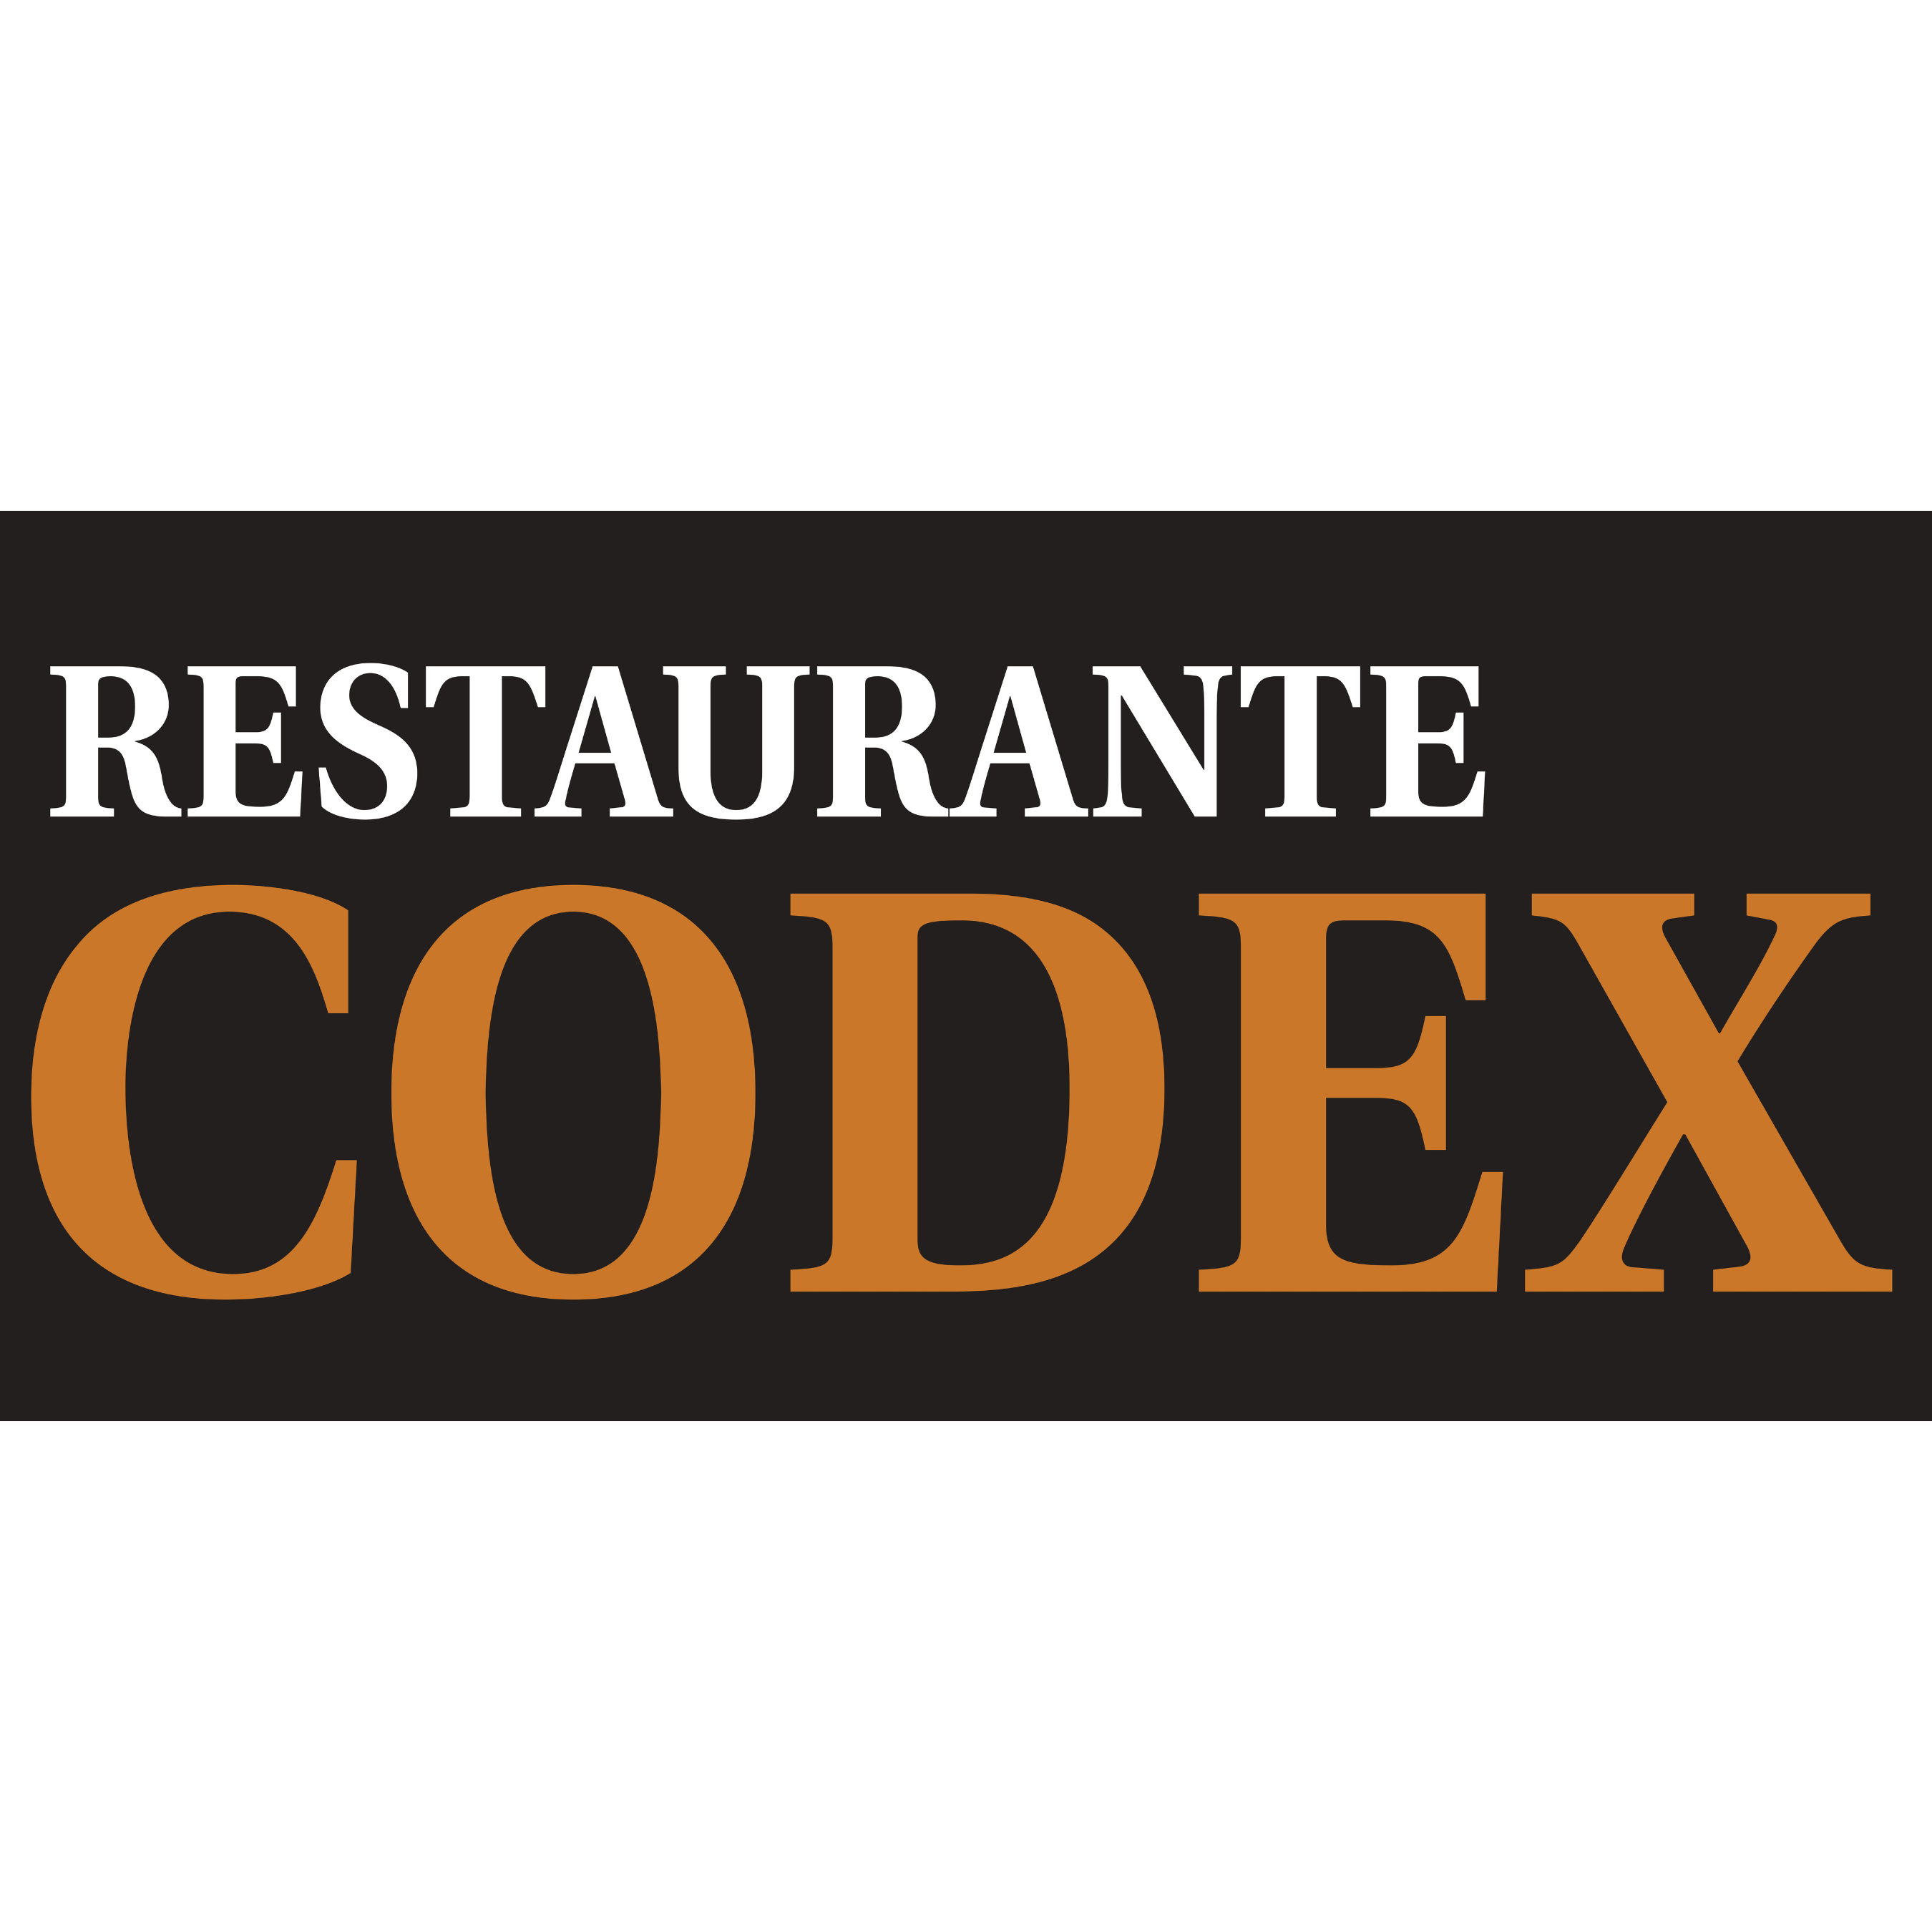 https://sdcompostela.com/wp-content/uploads/2022/11/Restaurante-Codex.png